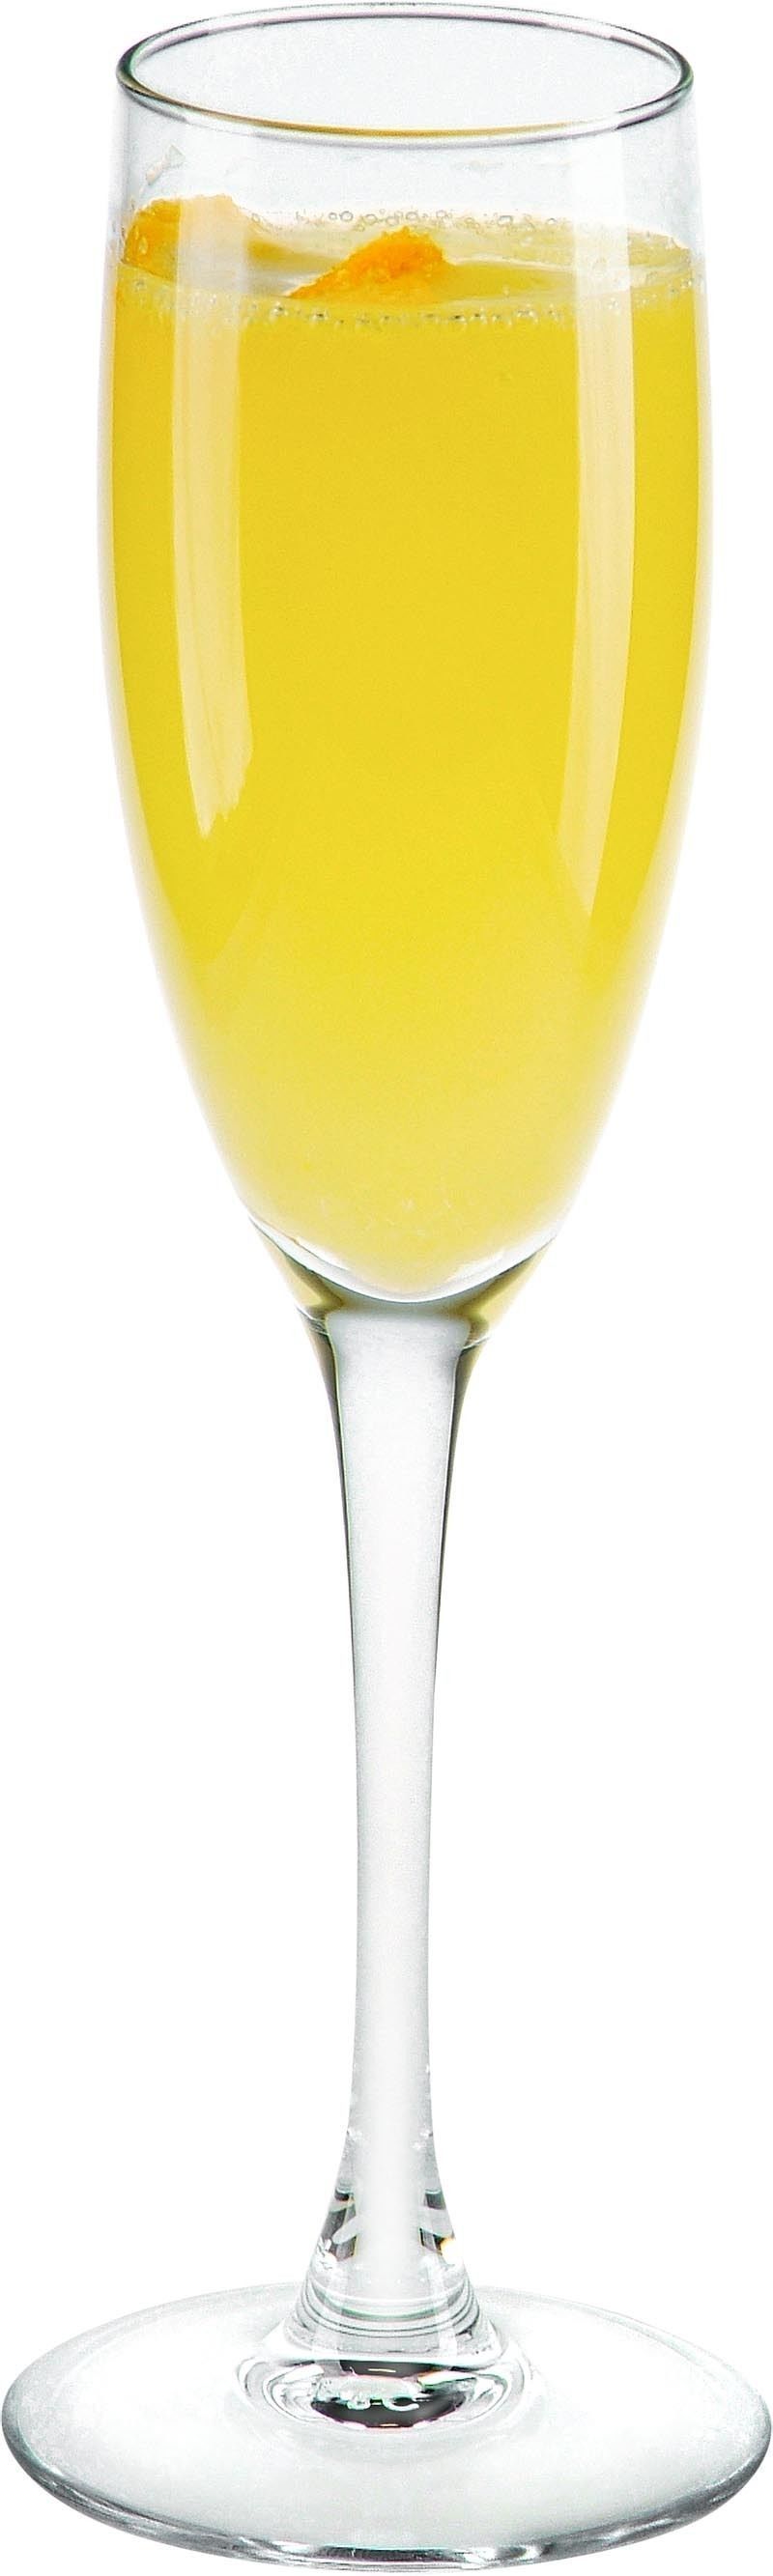 Comment préparer le cocktail Grand Mimosa